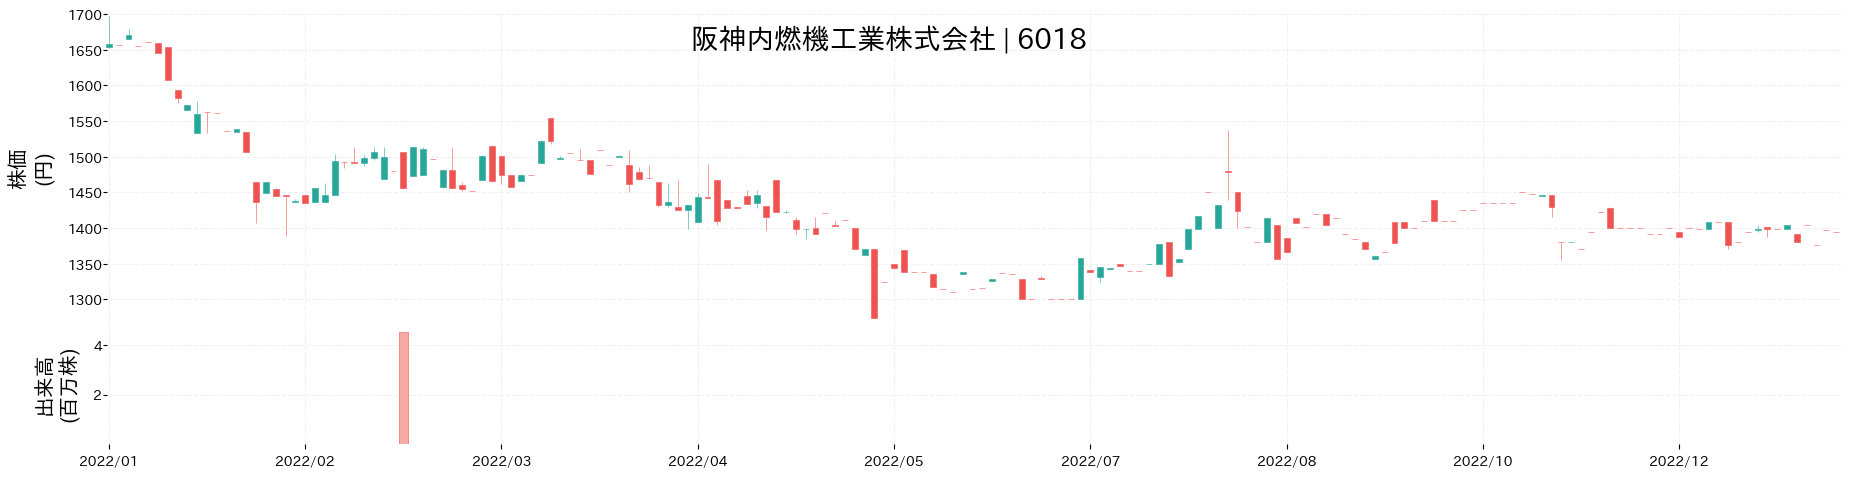 阪神内燃機工業の株価推移(2022)